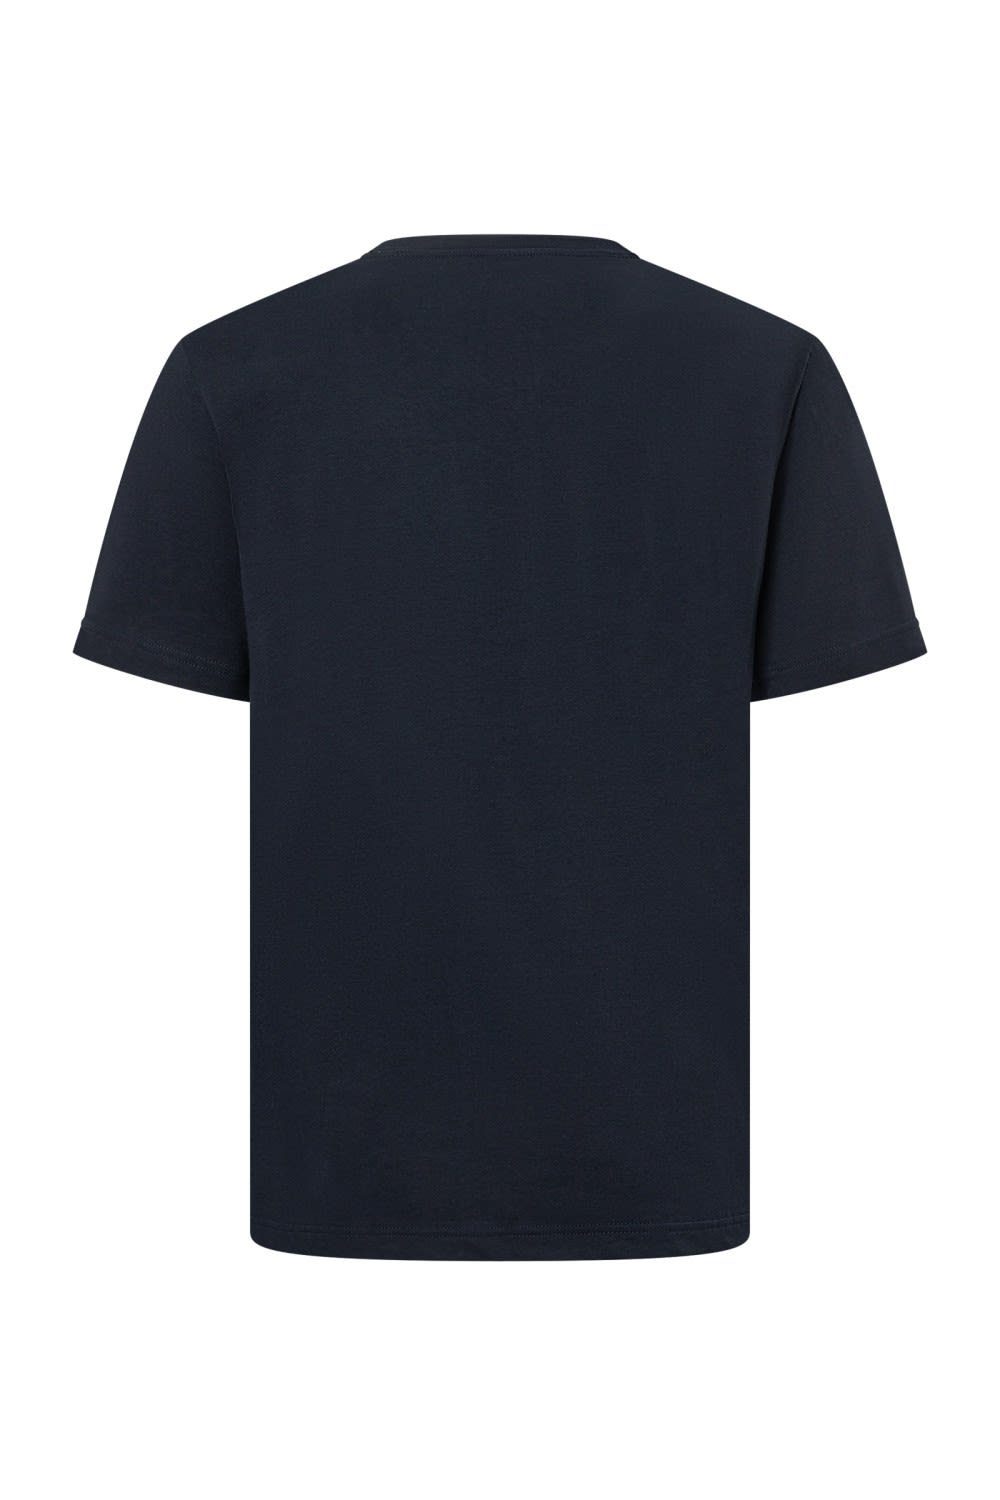 Fire T-Shirt + Bogner Deepest Kurzarm-Shirt Herren Ice Ice Matteo Bogner + Mens Navy Fire